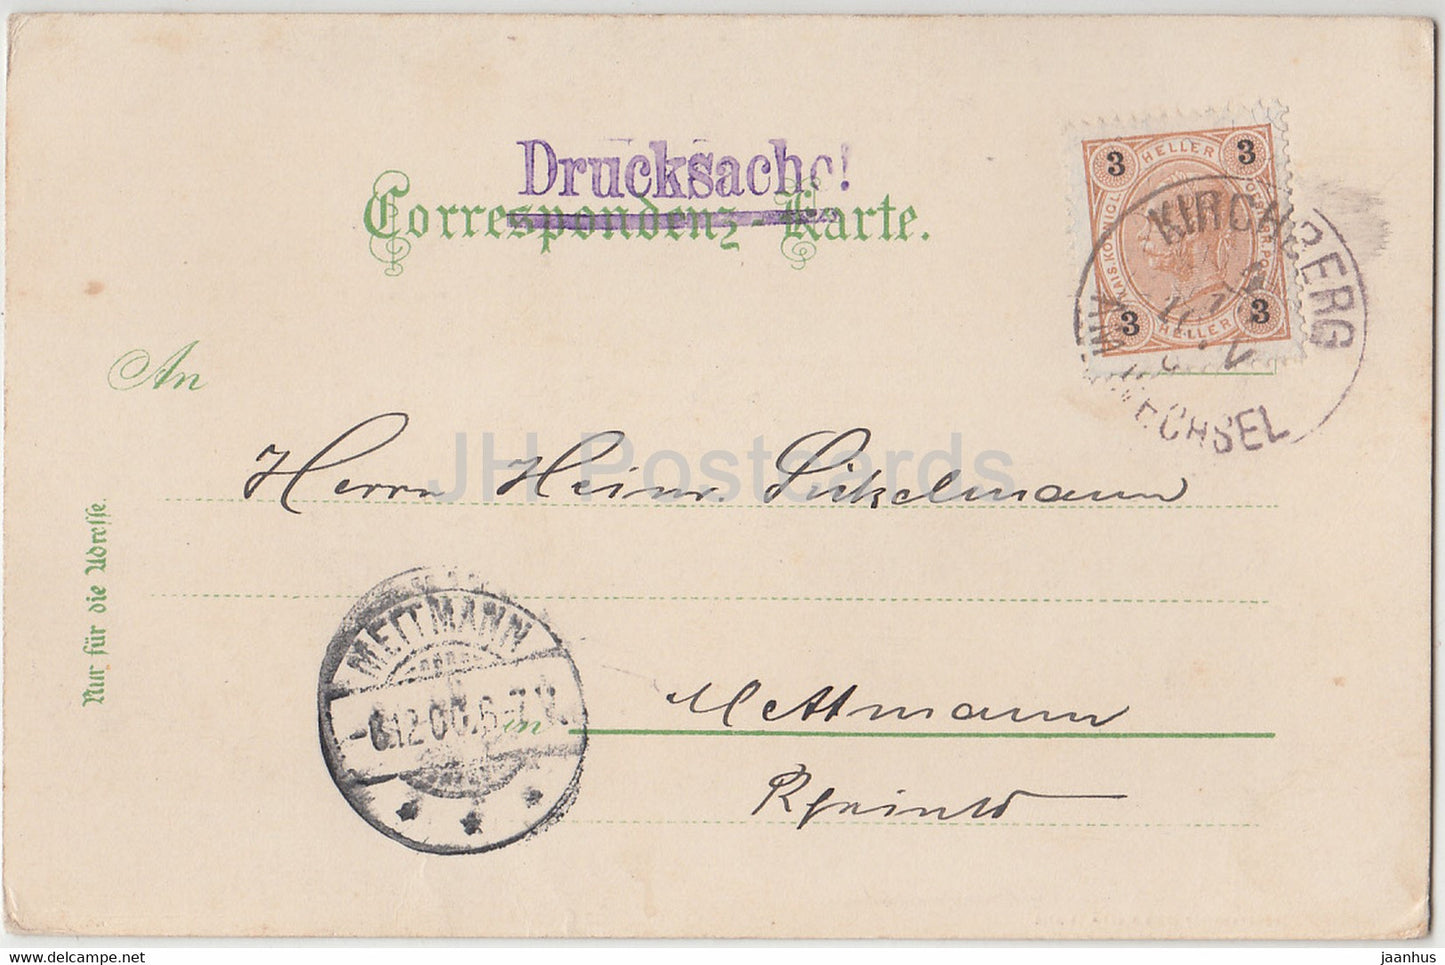 Gruss aus dem Semmering Gebiet - Kalte Rinne - Drucksache - alte Postkarte - 1900 - Österreich - gebraucht